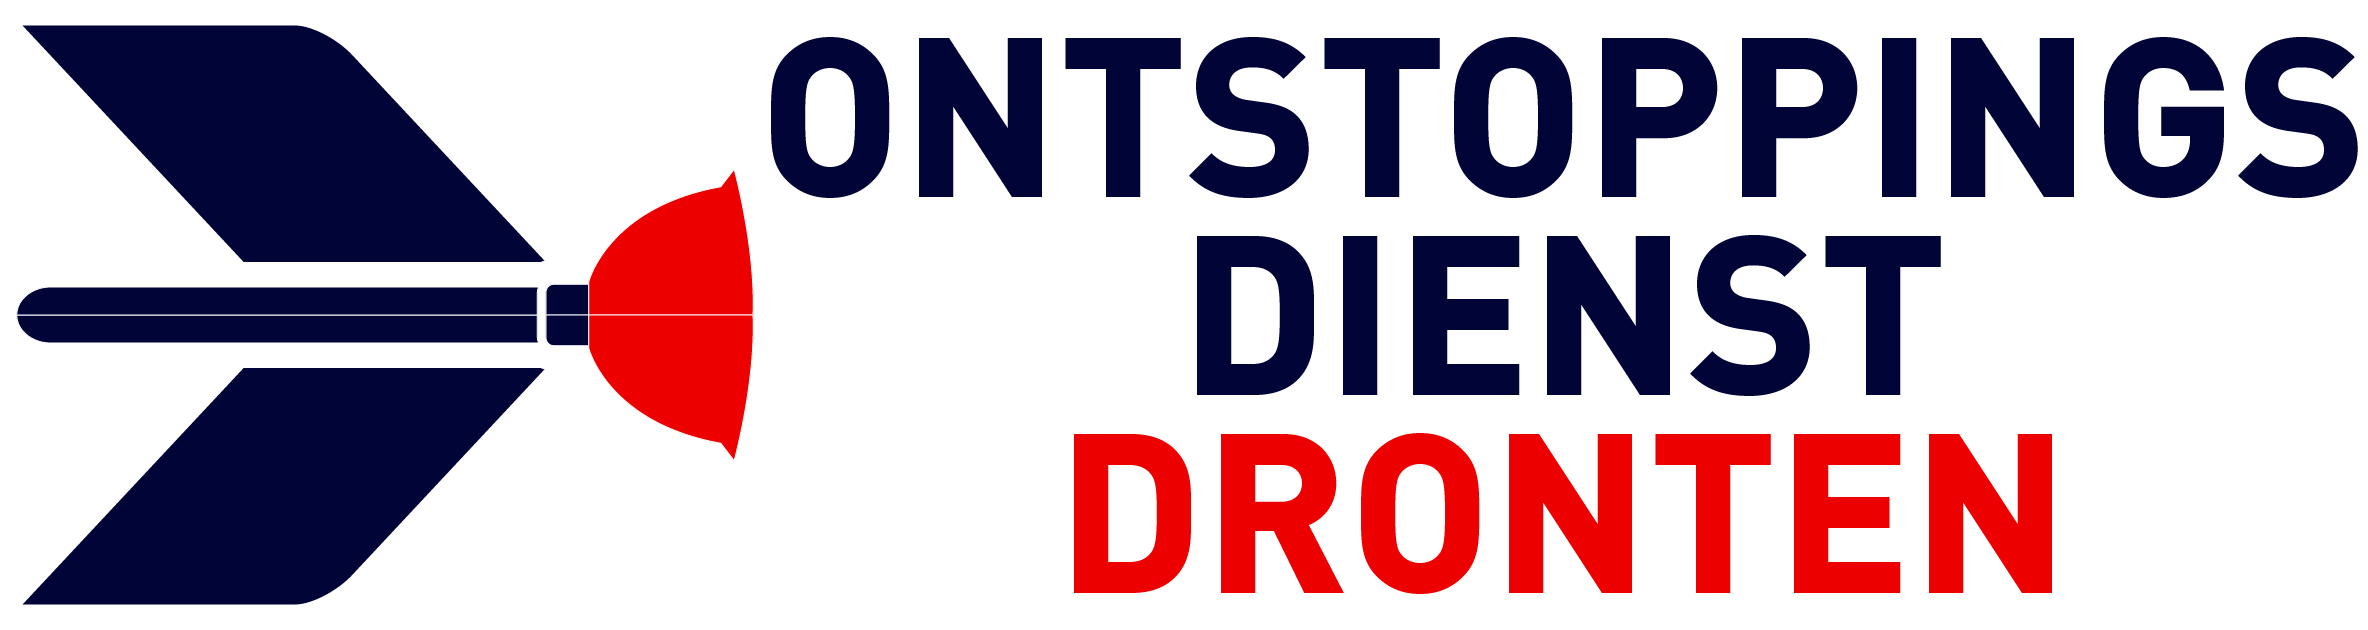 Ontstoppingsdienst Dronten logo